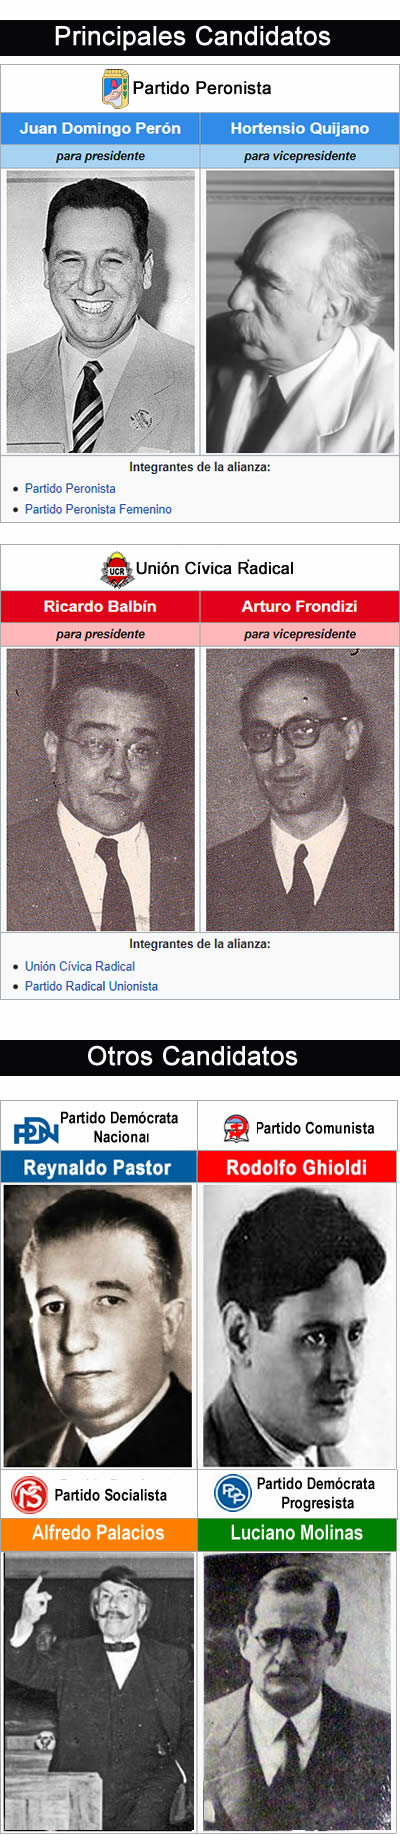 candidatos presidenciales del año 1951